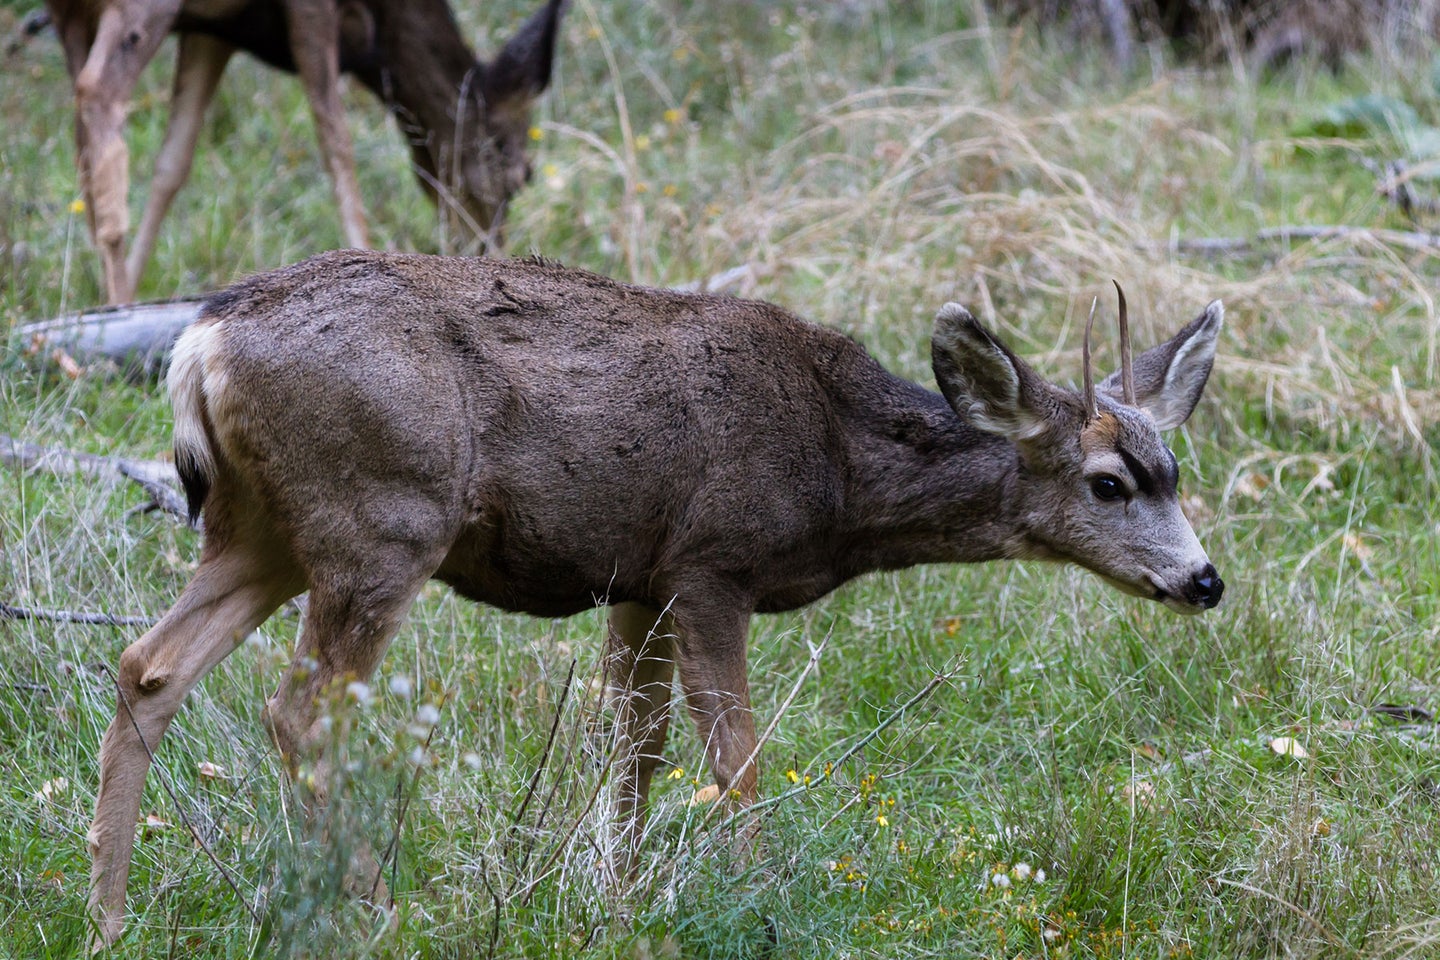 A young mule deer buck walks through a field.